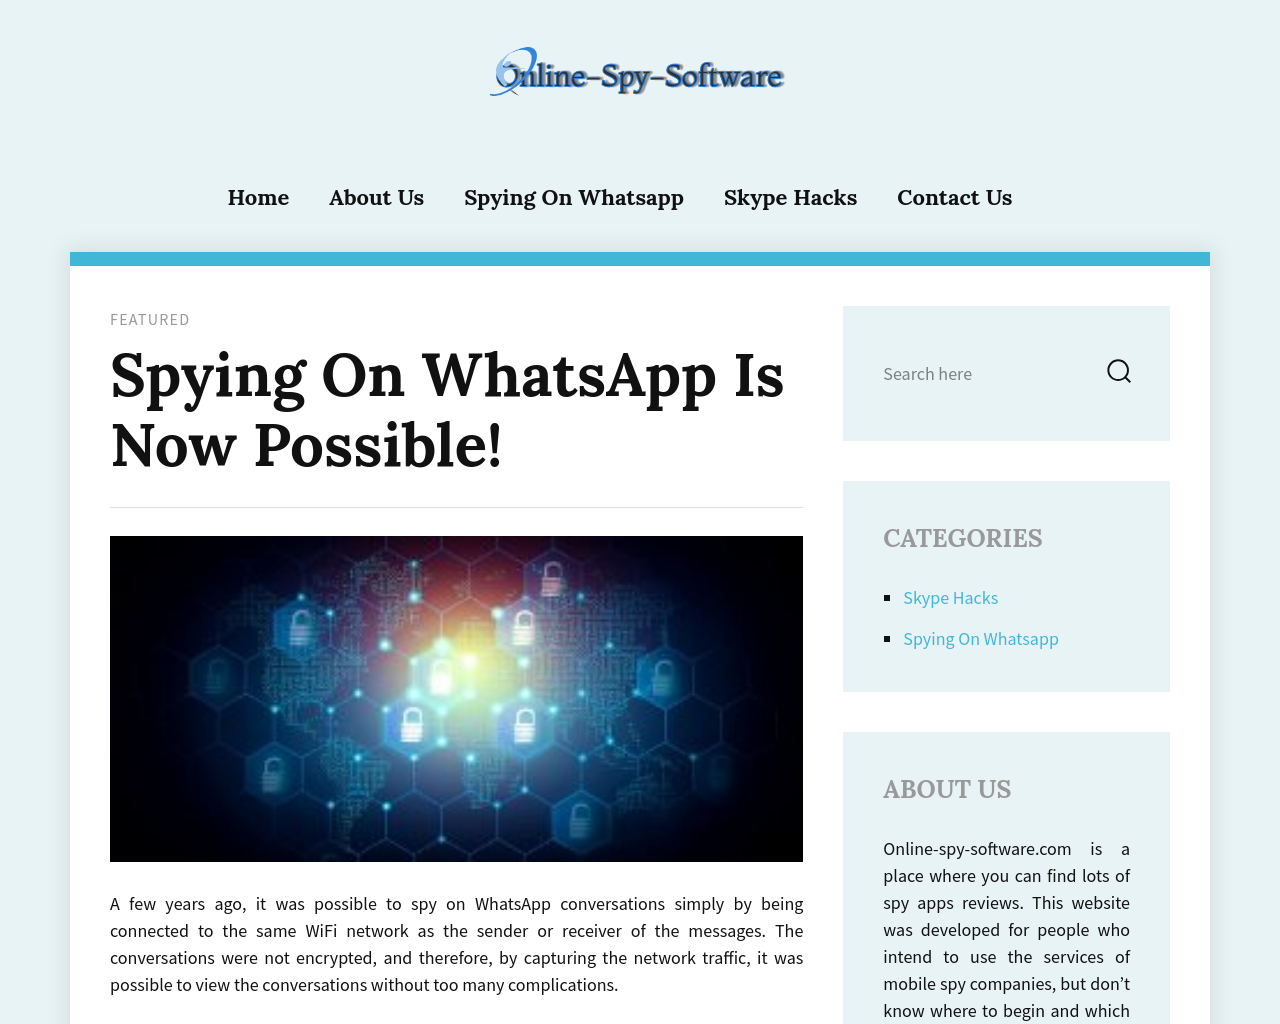 online-spy-software.com